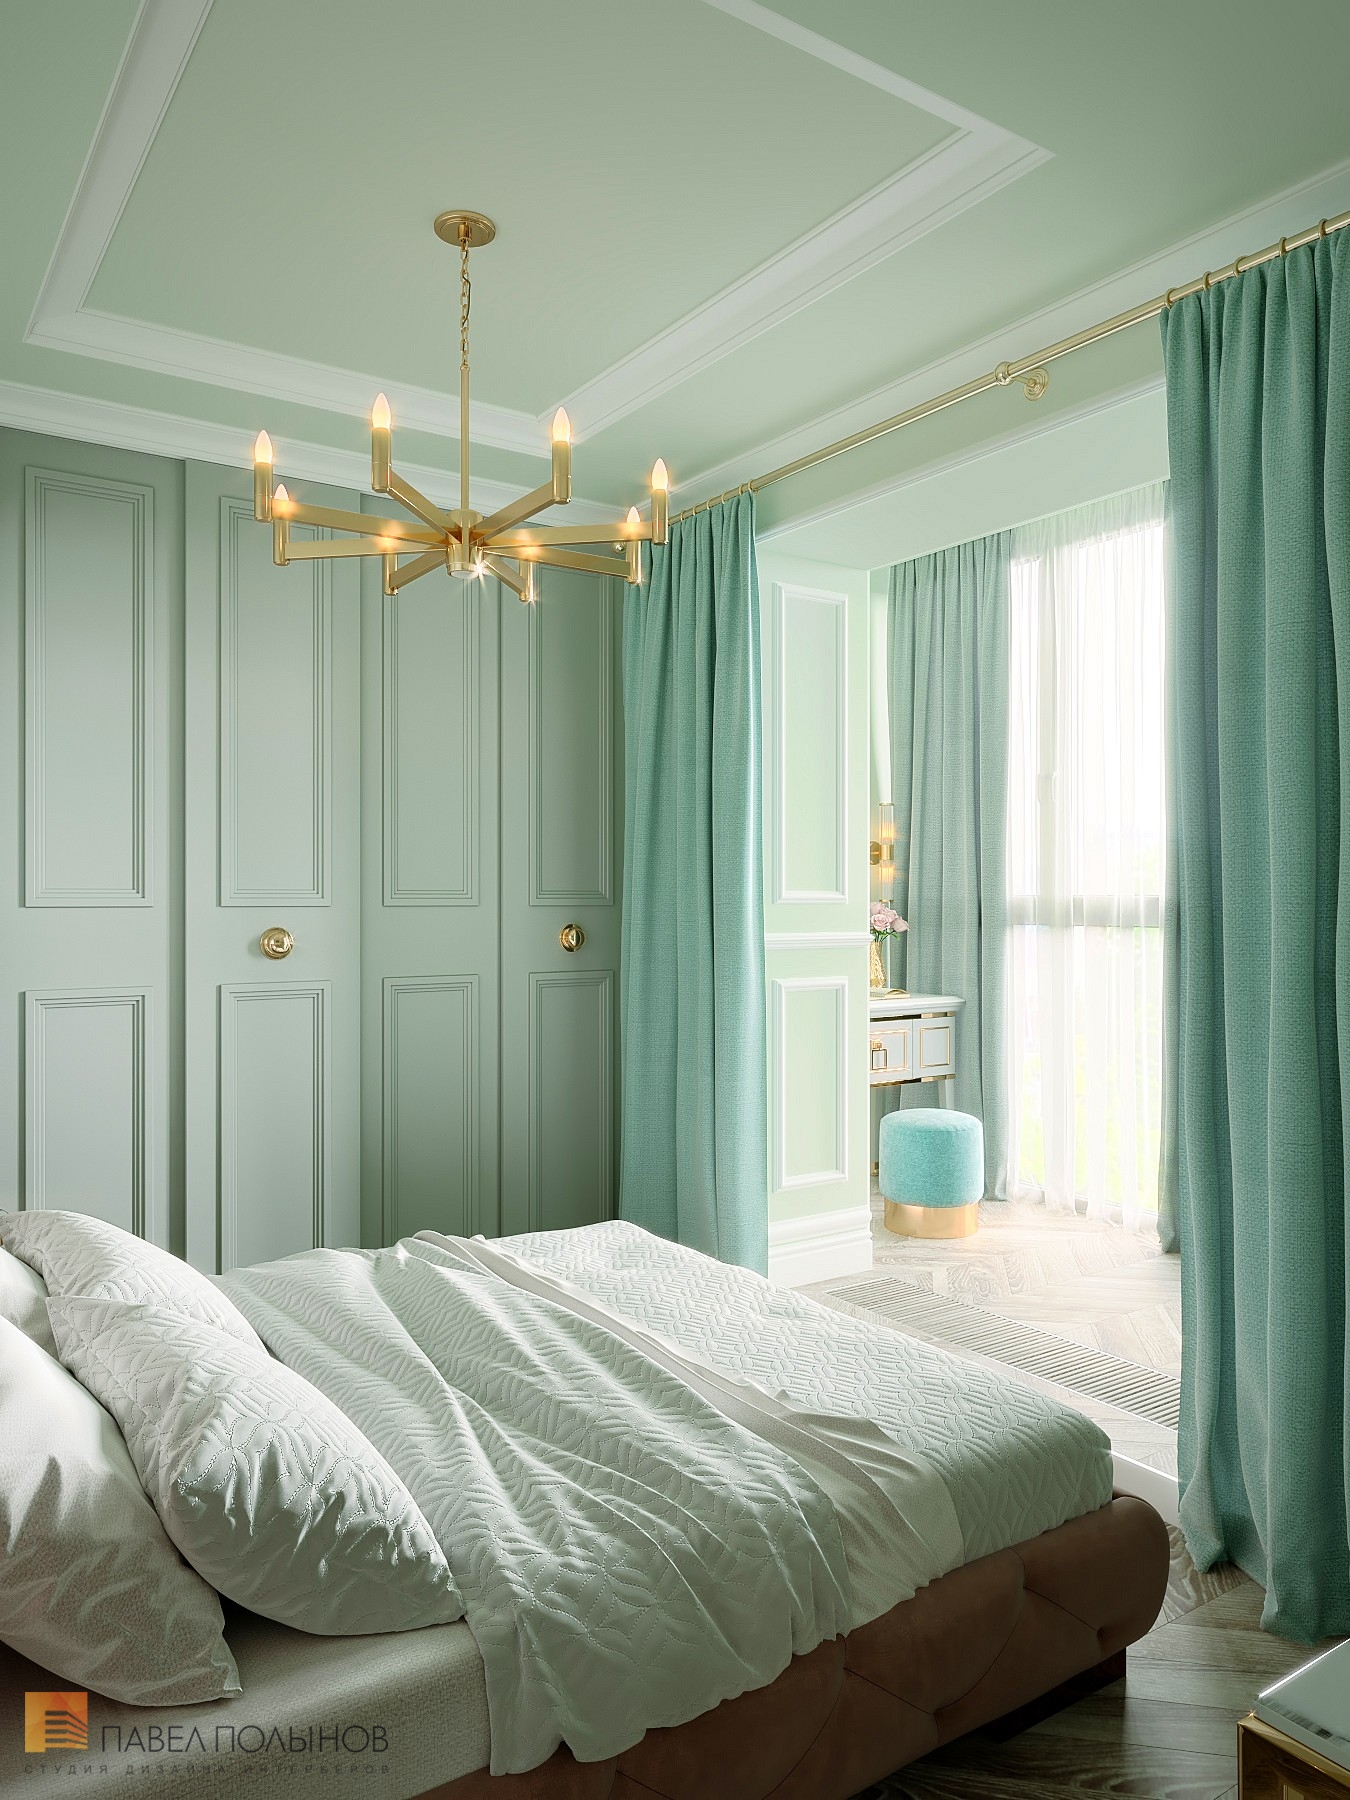 Фото дизайн интерьера спальни из проекта «Интерьер квартиры в стиле неоклассика в ЖК «The Residence», 219 кв.м.»